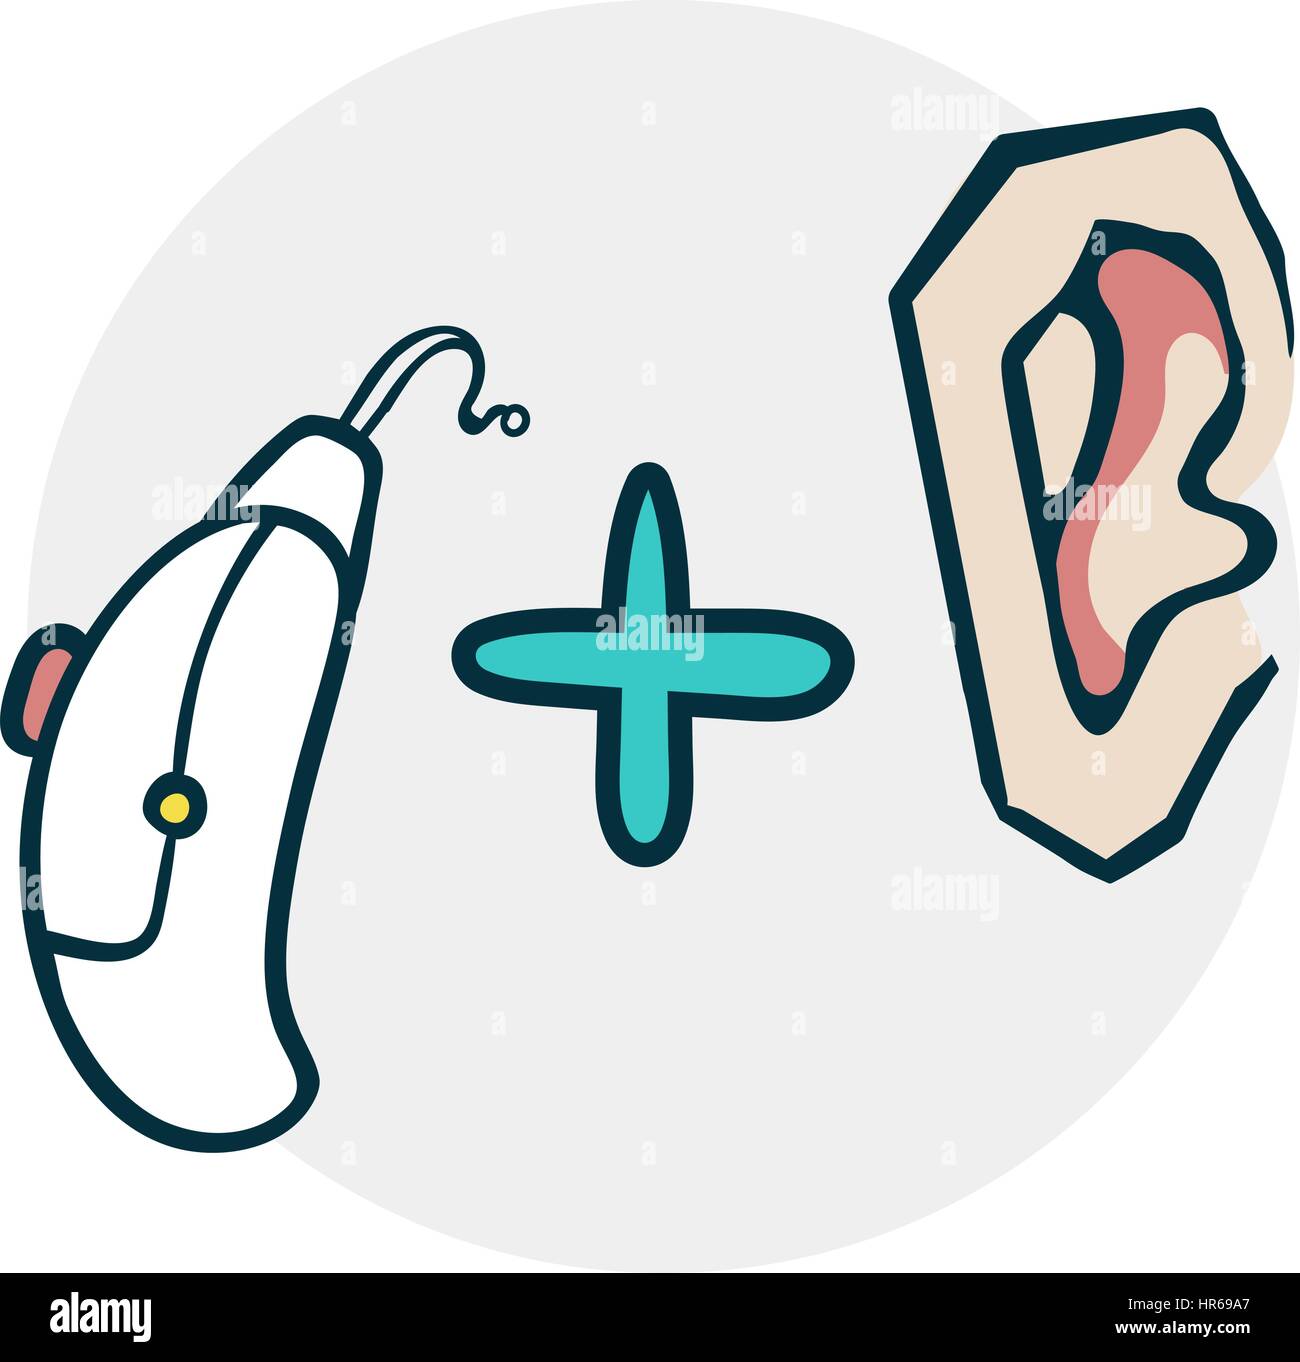 Probleme mit dem hören und Hörgeräte. Symbol zu medizinischen Themen. Beispiel für einen lustigen Cartoon-Stil Stock Vektor